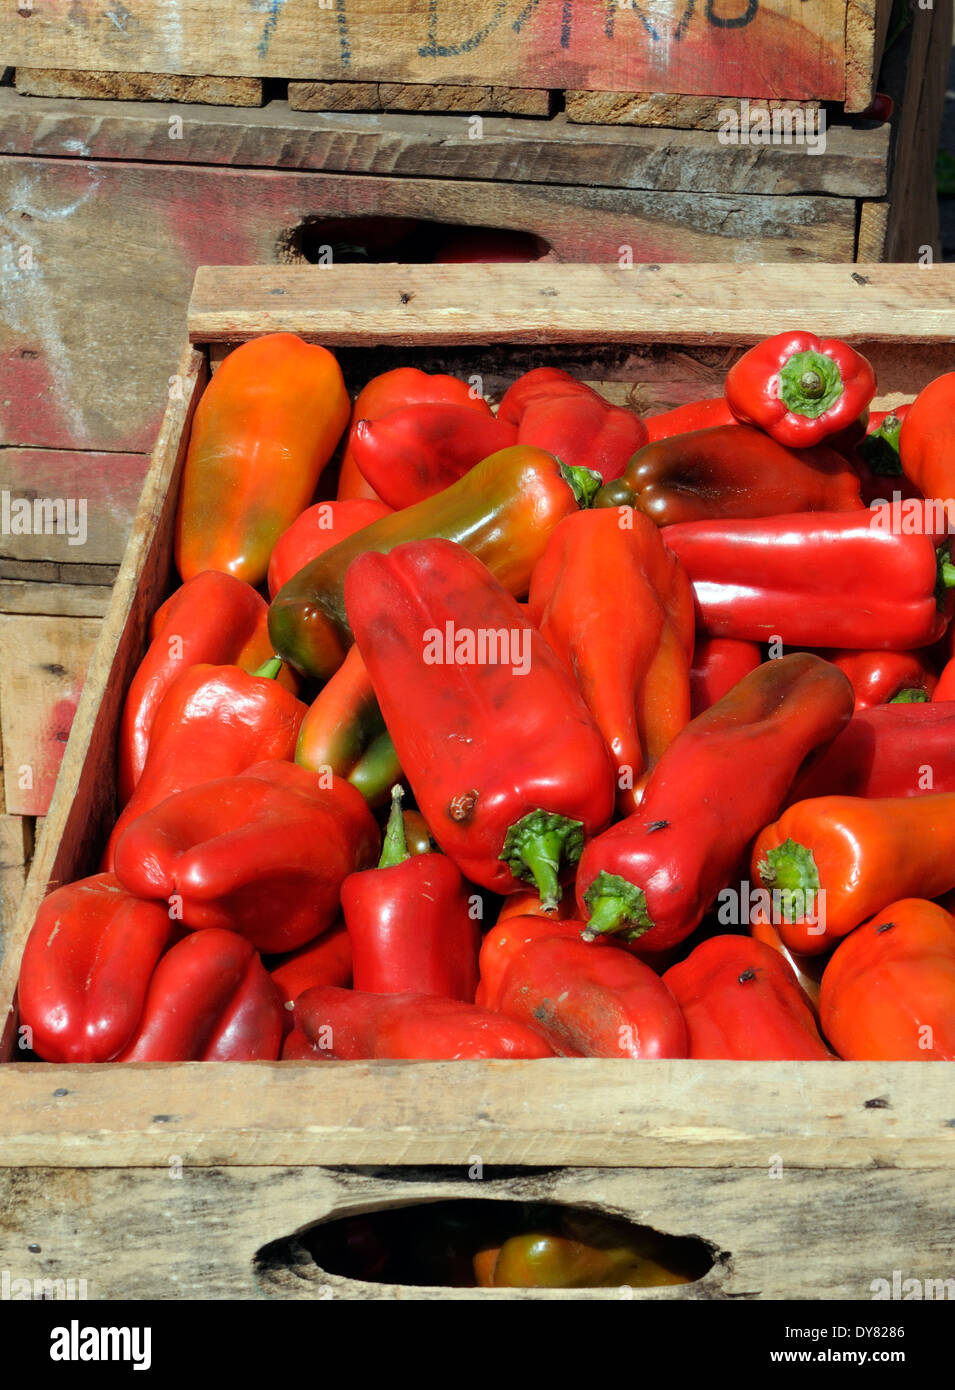 Boîtes de poivrons rouge en vente dans la production de légumes Almolonga. San Pedro de Almolonga, République du Guatemala. Banque D'Images